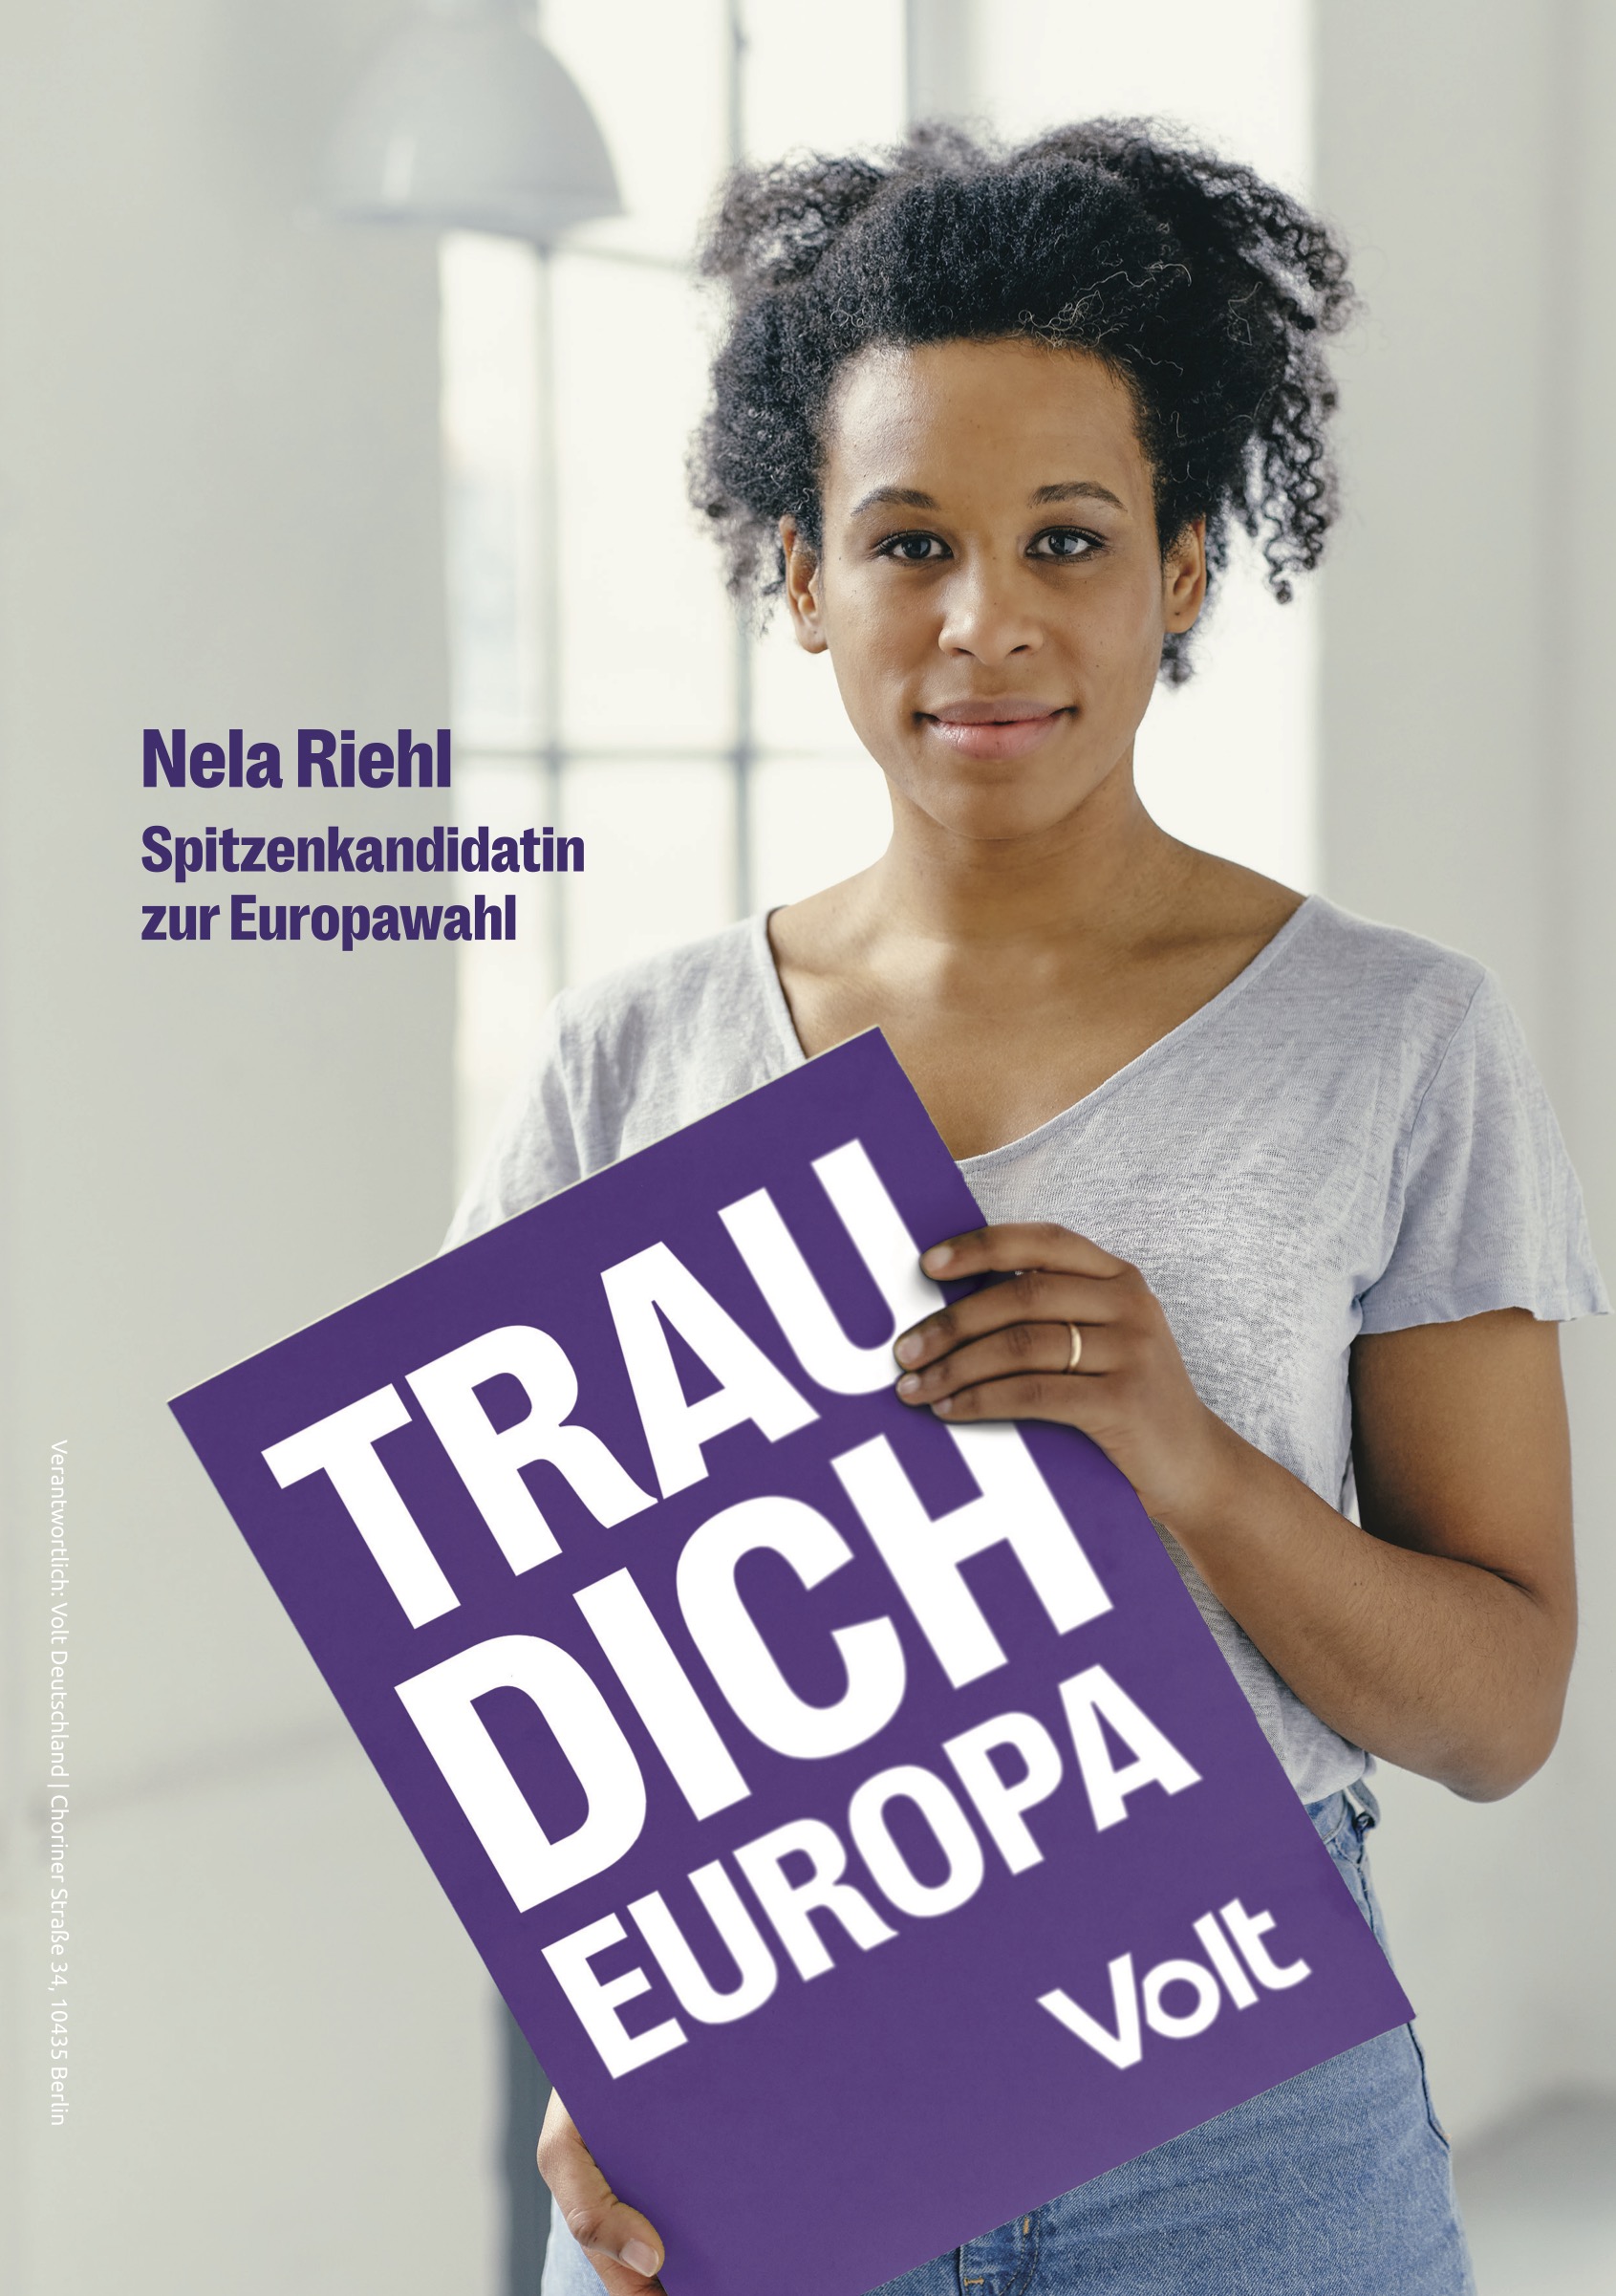 VOLT-Kandidatin Nela Riehl hält Schild: "Trau dich Europa"